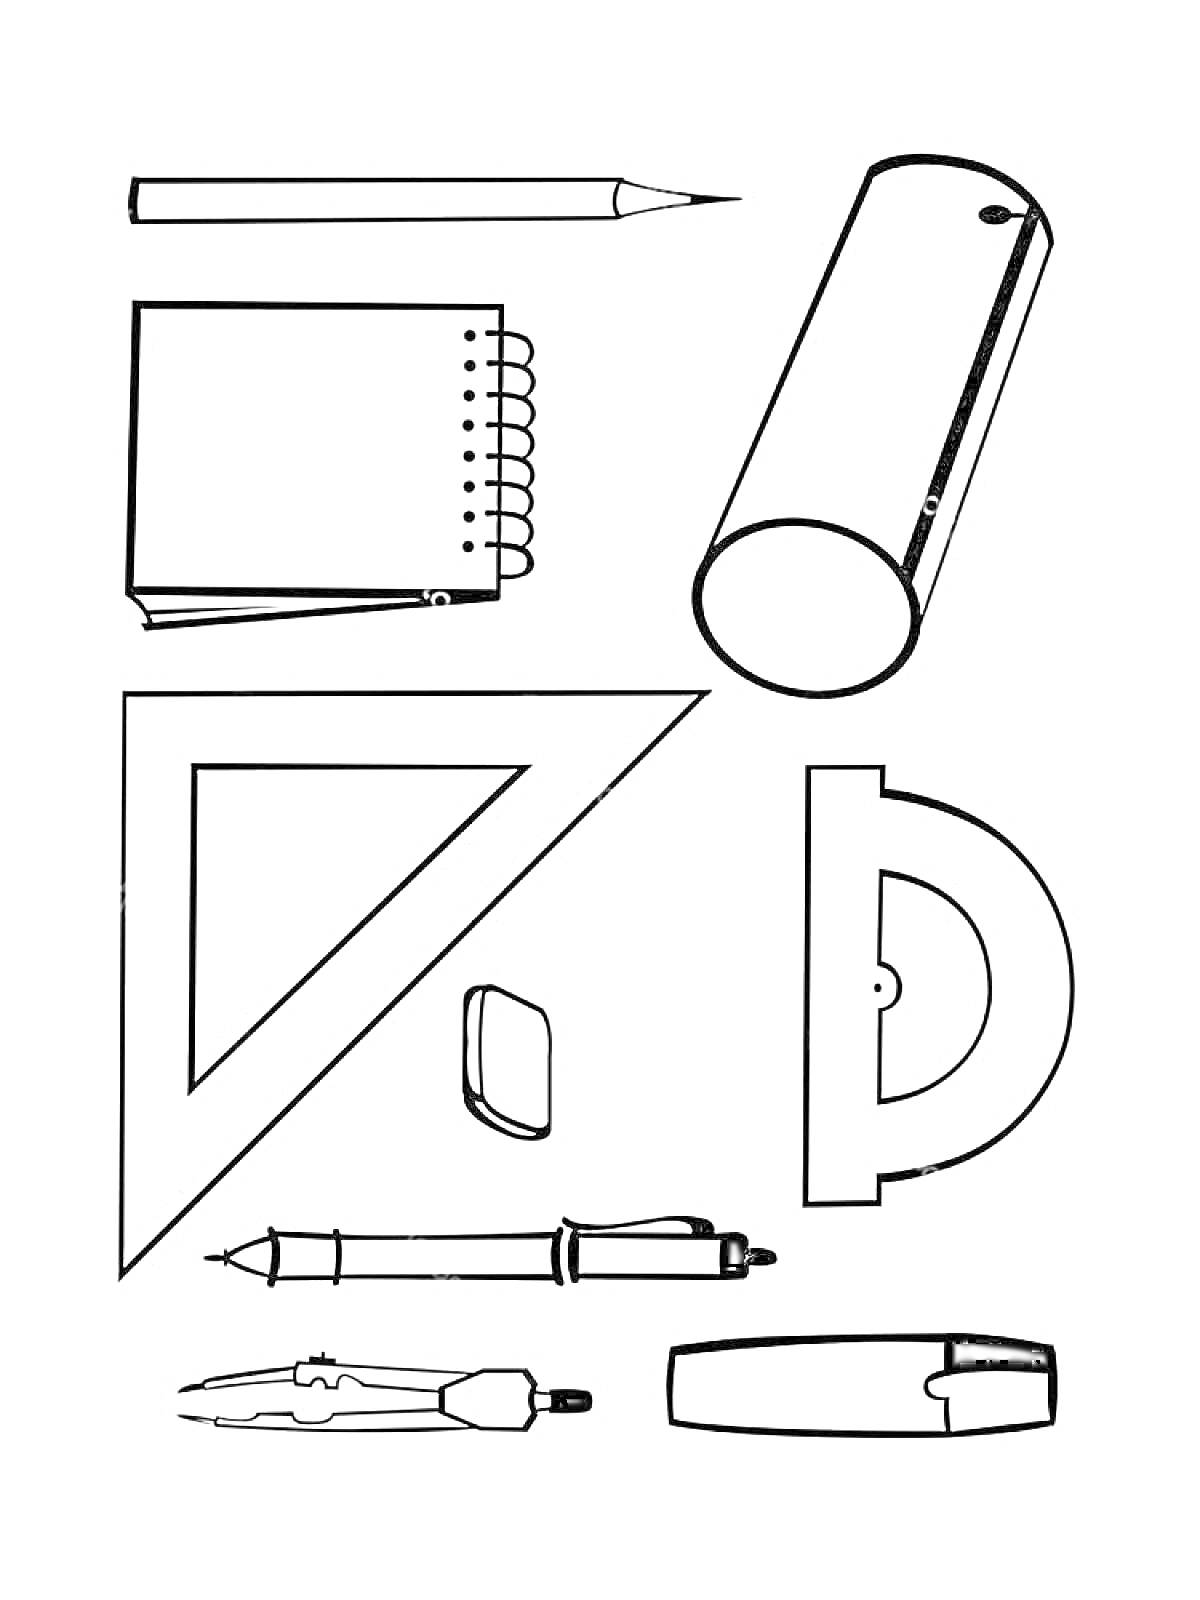 Раскраска Школьные принадлежности: карандаш, точилка, блокнот, треугольник, стёрка, транспортир, циркуль, ручка, ножницы